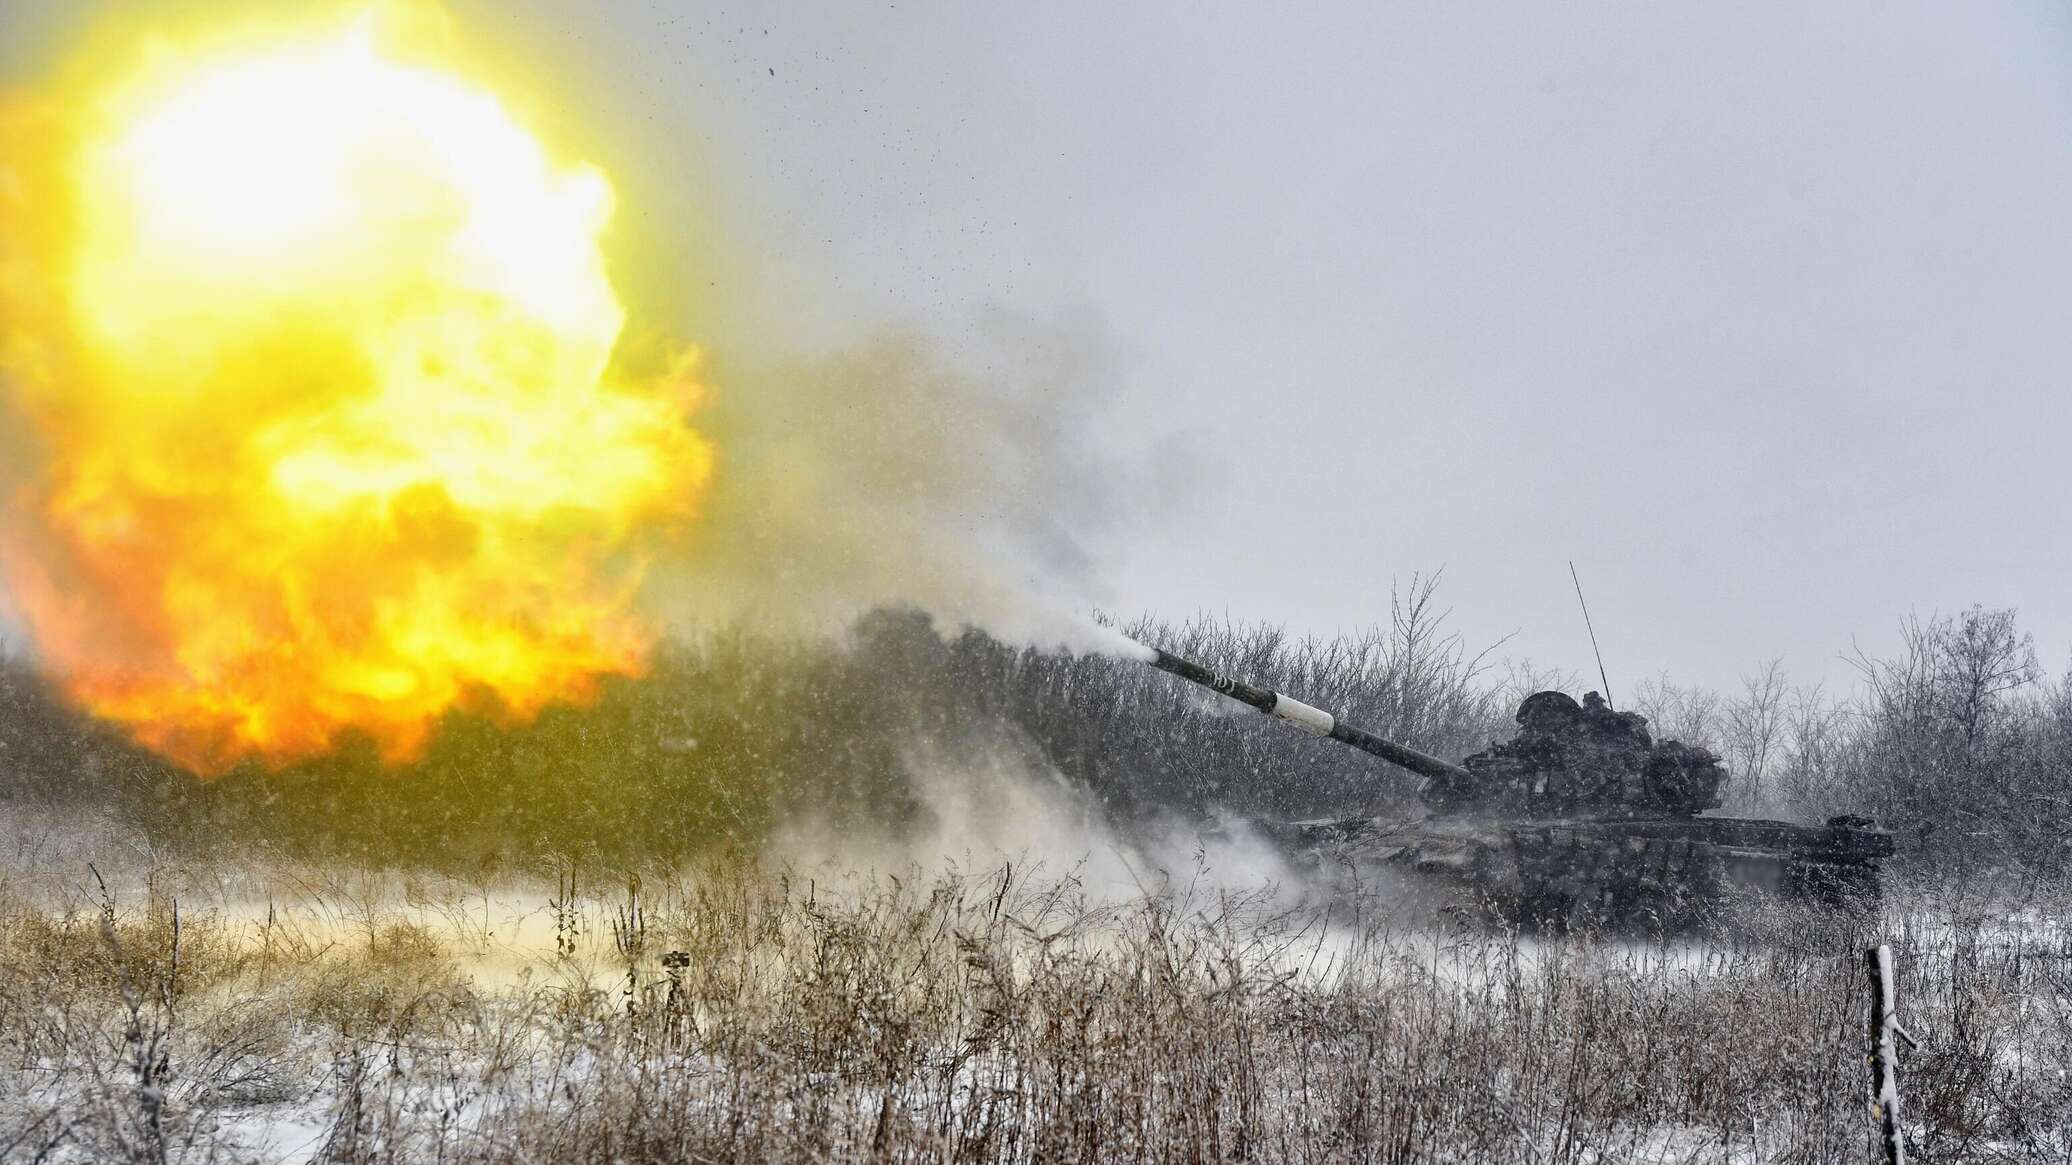 الجيش الروسي يدمر معدات قوات كييف بما في ذلك مدفع "قيصر" الفرنسي